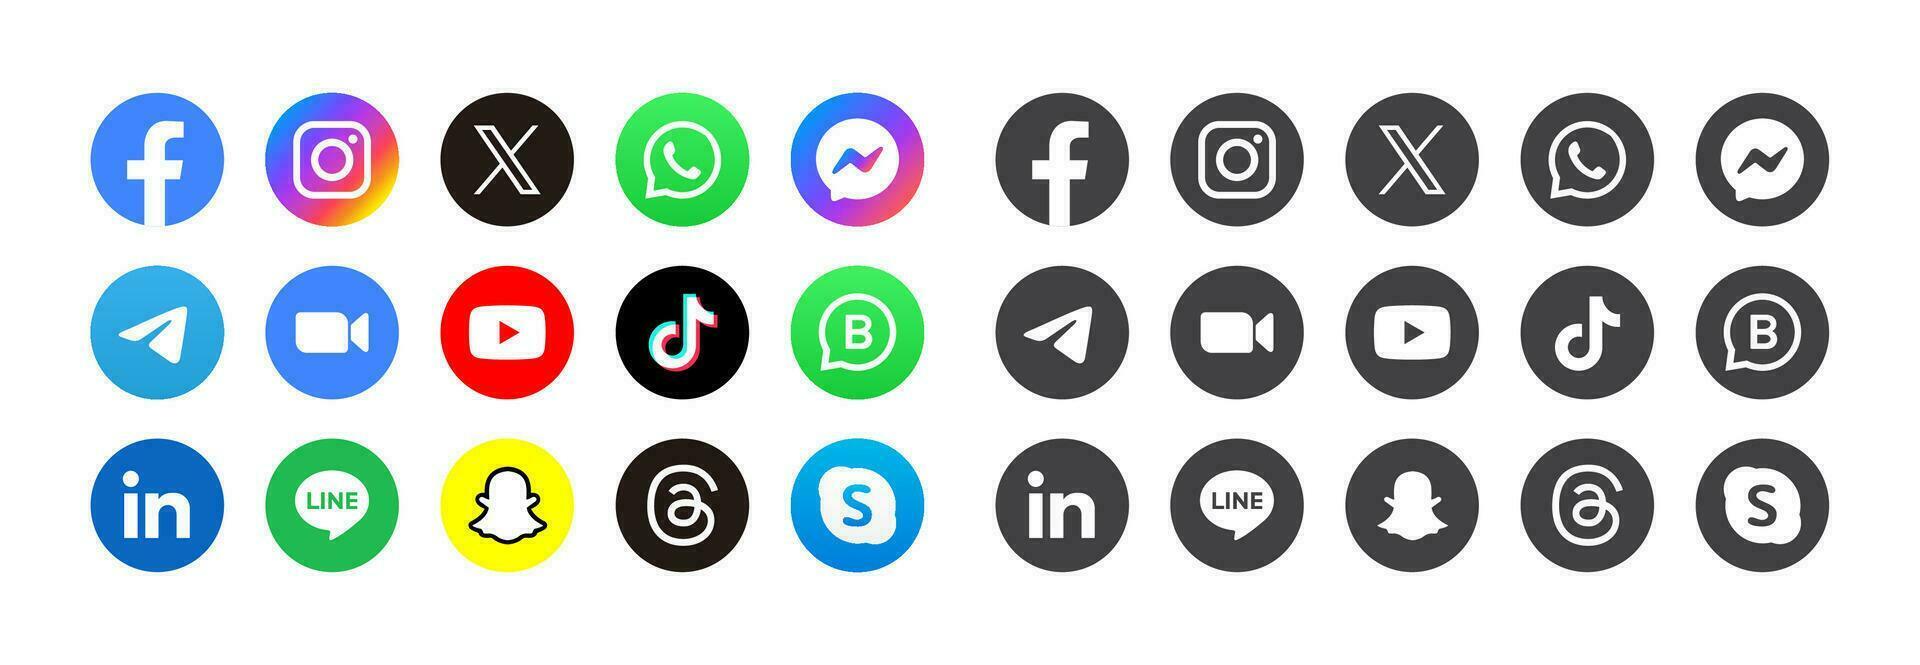 sociaal media logos illustratie vector